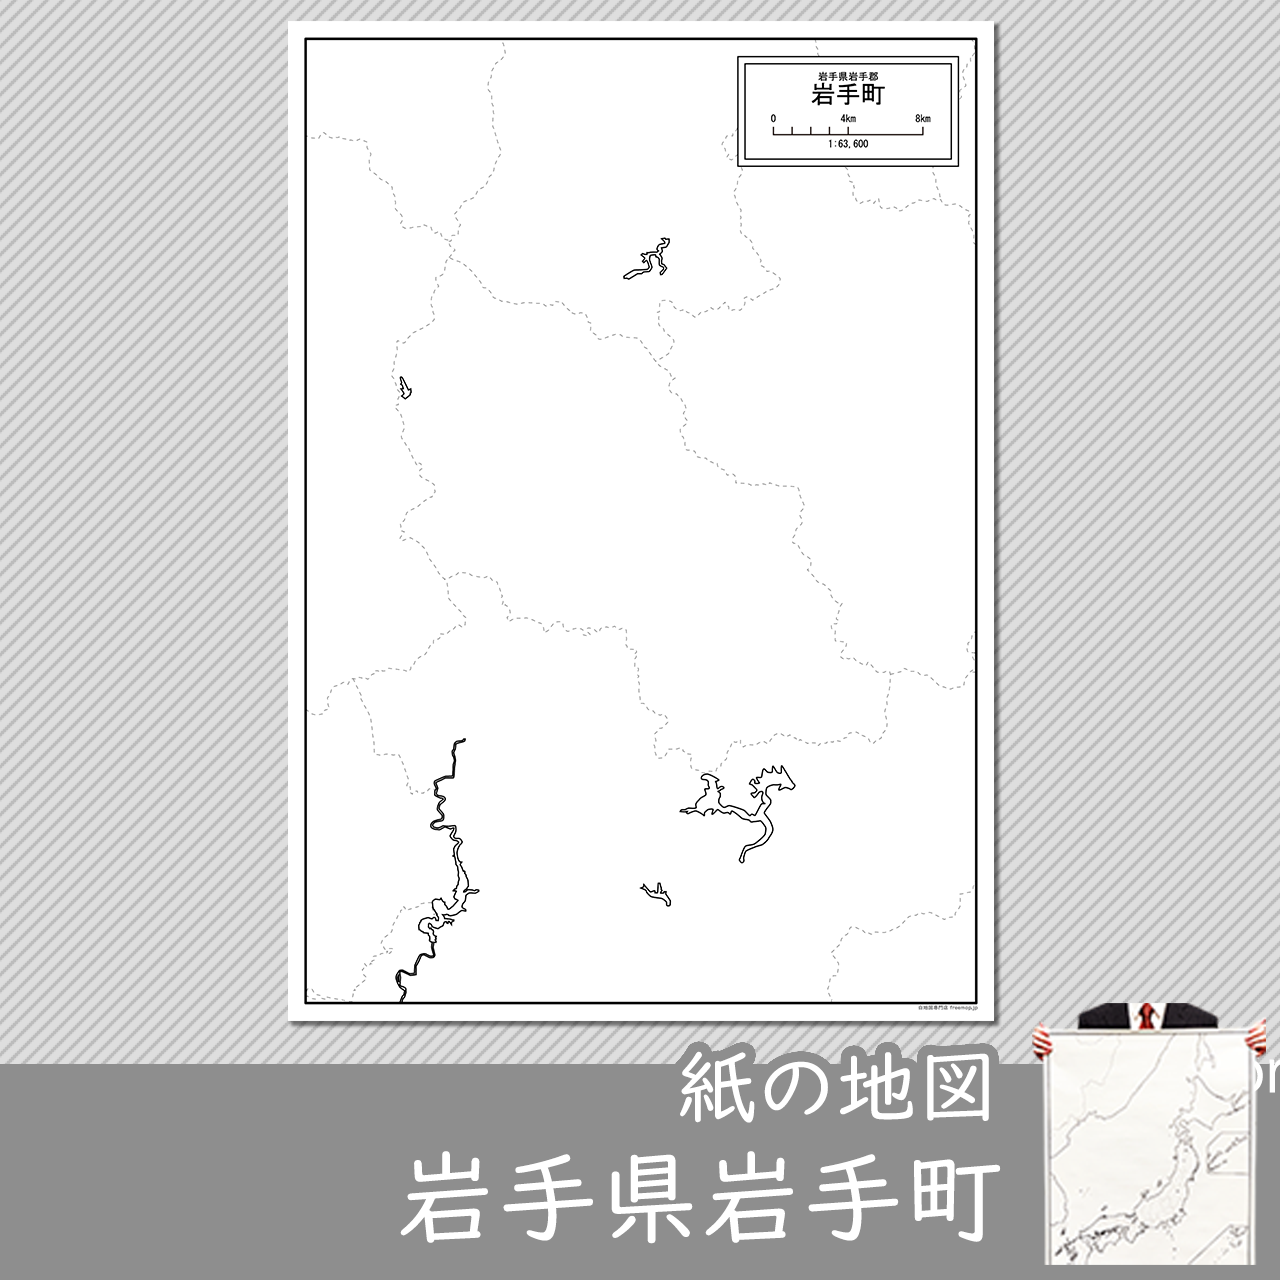 岩手町の紙の白地図のサムネイル